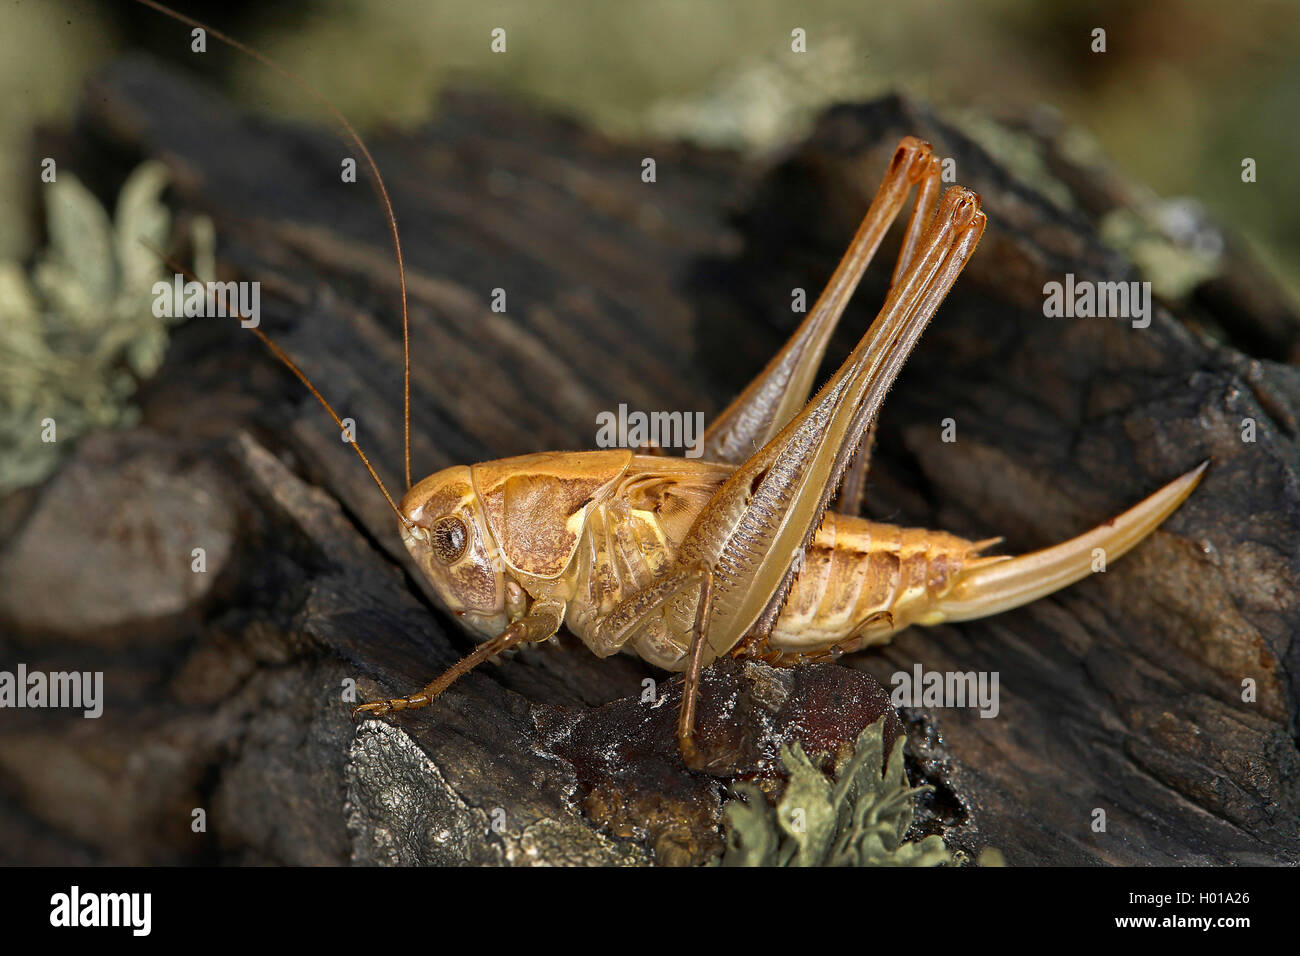 Saltamontes de cuernos largos (Tettigoniidae), se encuentra en la madera, Rumania Foto de stock